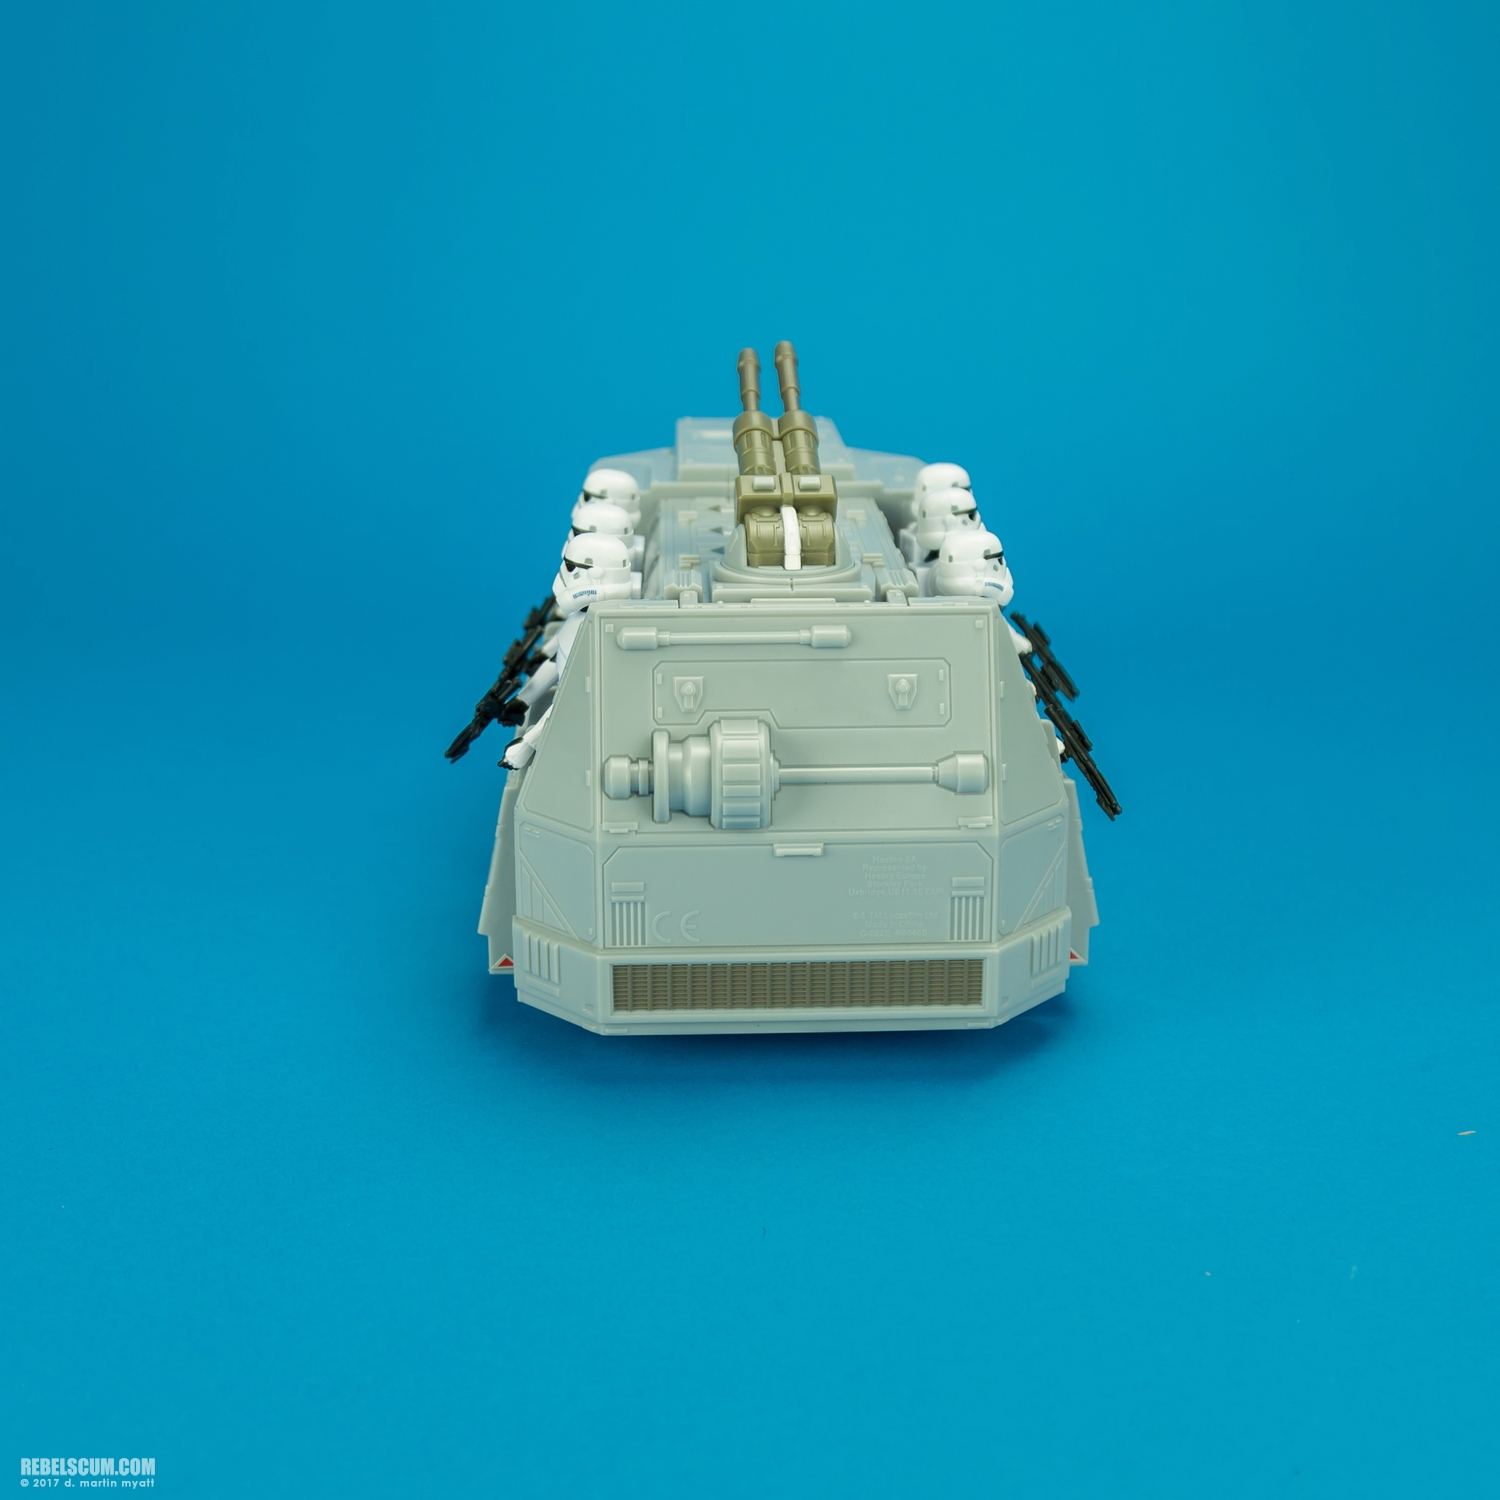 Imperial-Troop-Transport-Star-Wars-Rebels-Vehicle-Hasbro-022.jpg